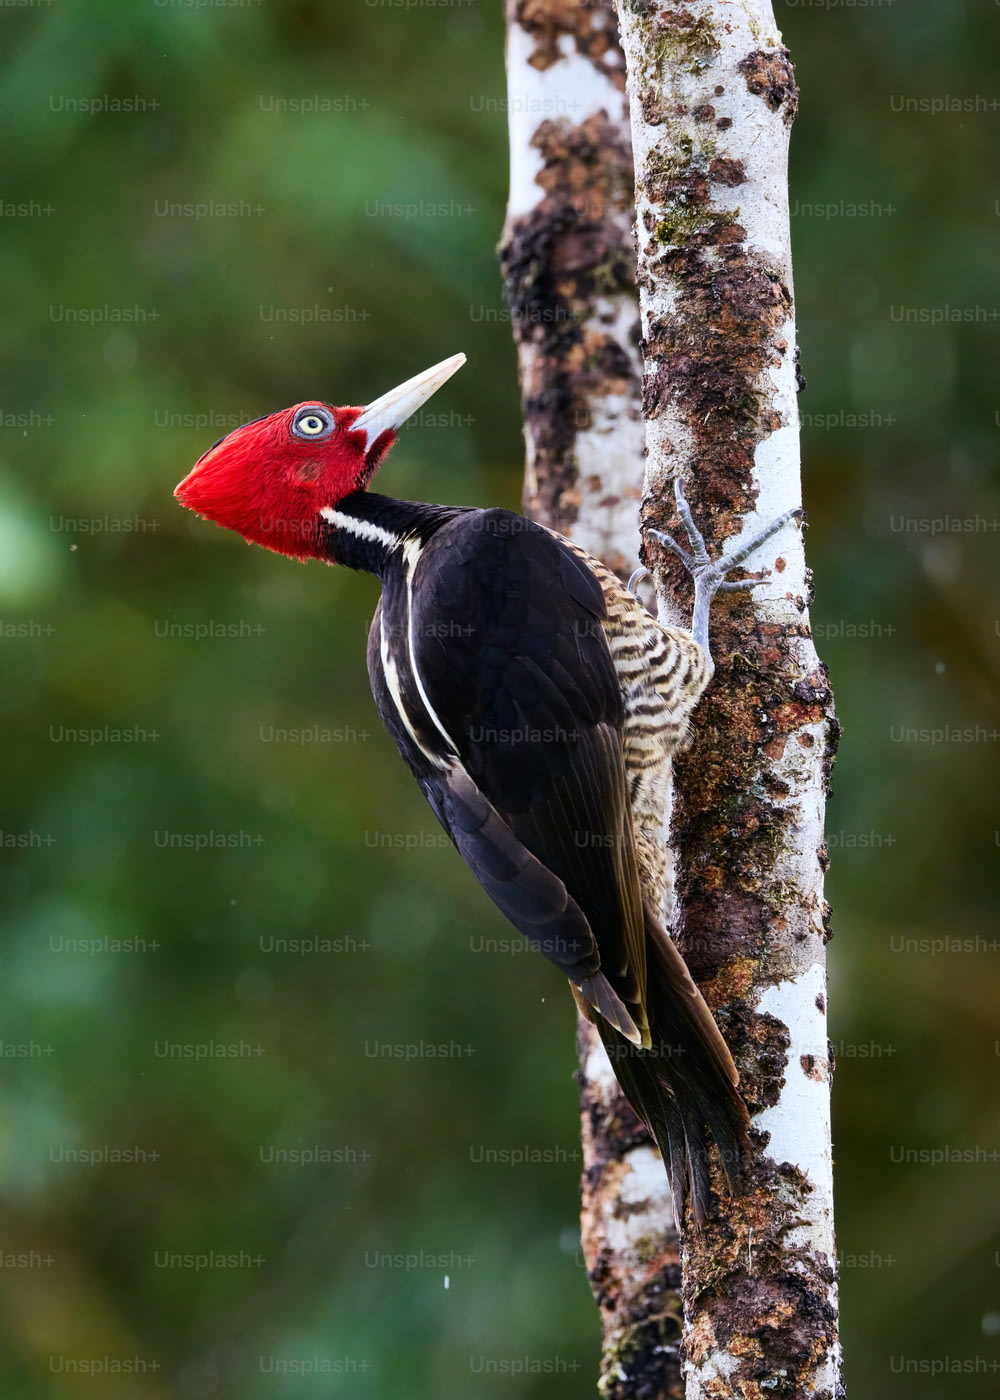 빨간색과 검은색 새가 나무 위에 서 있다